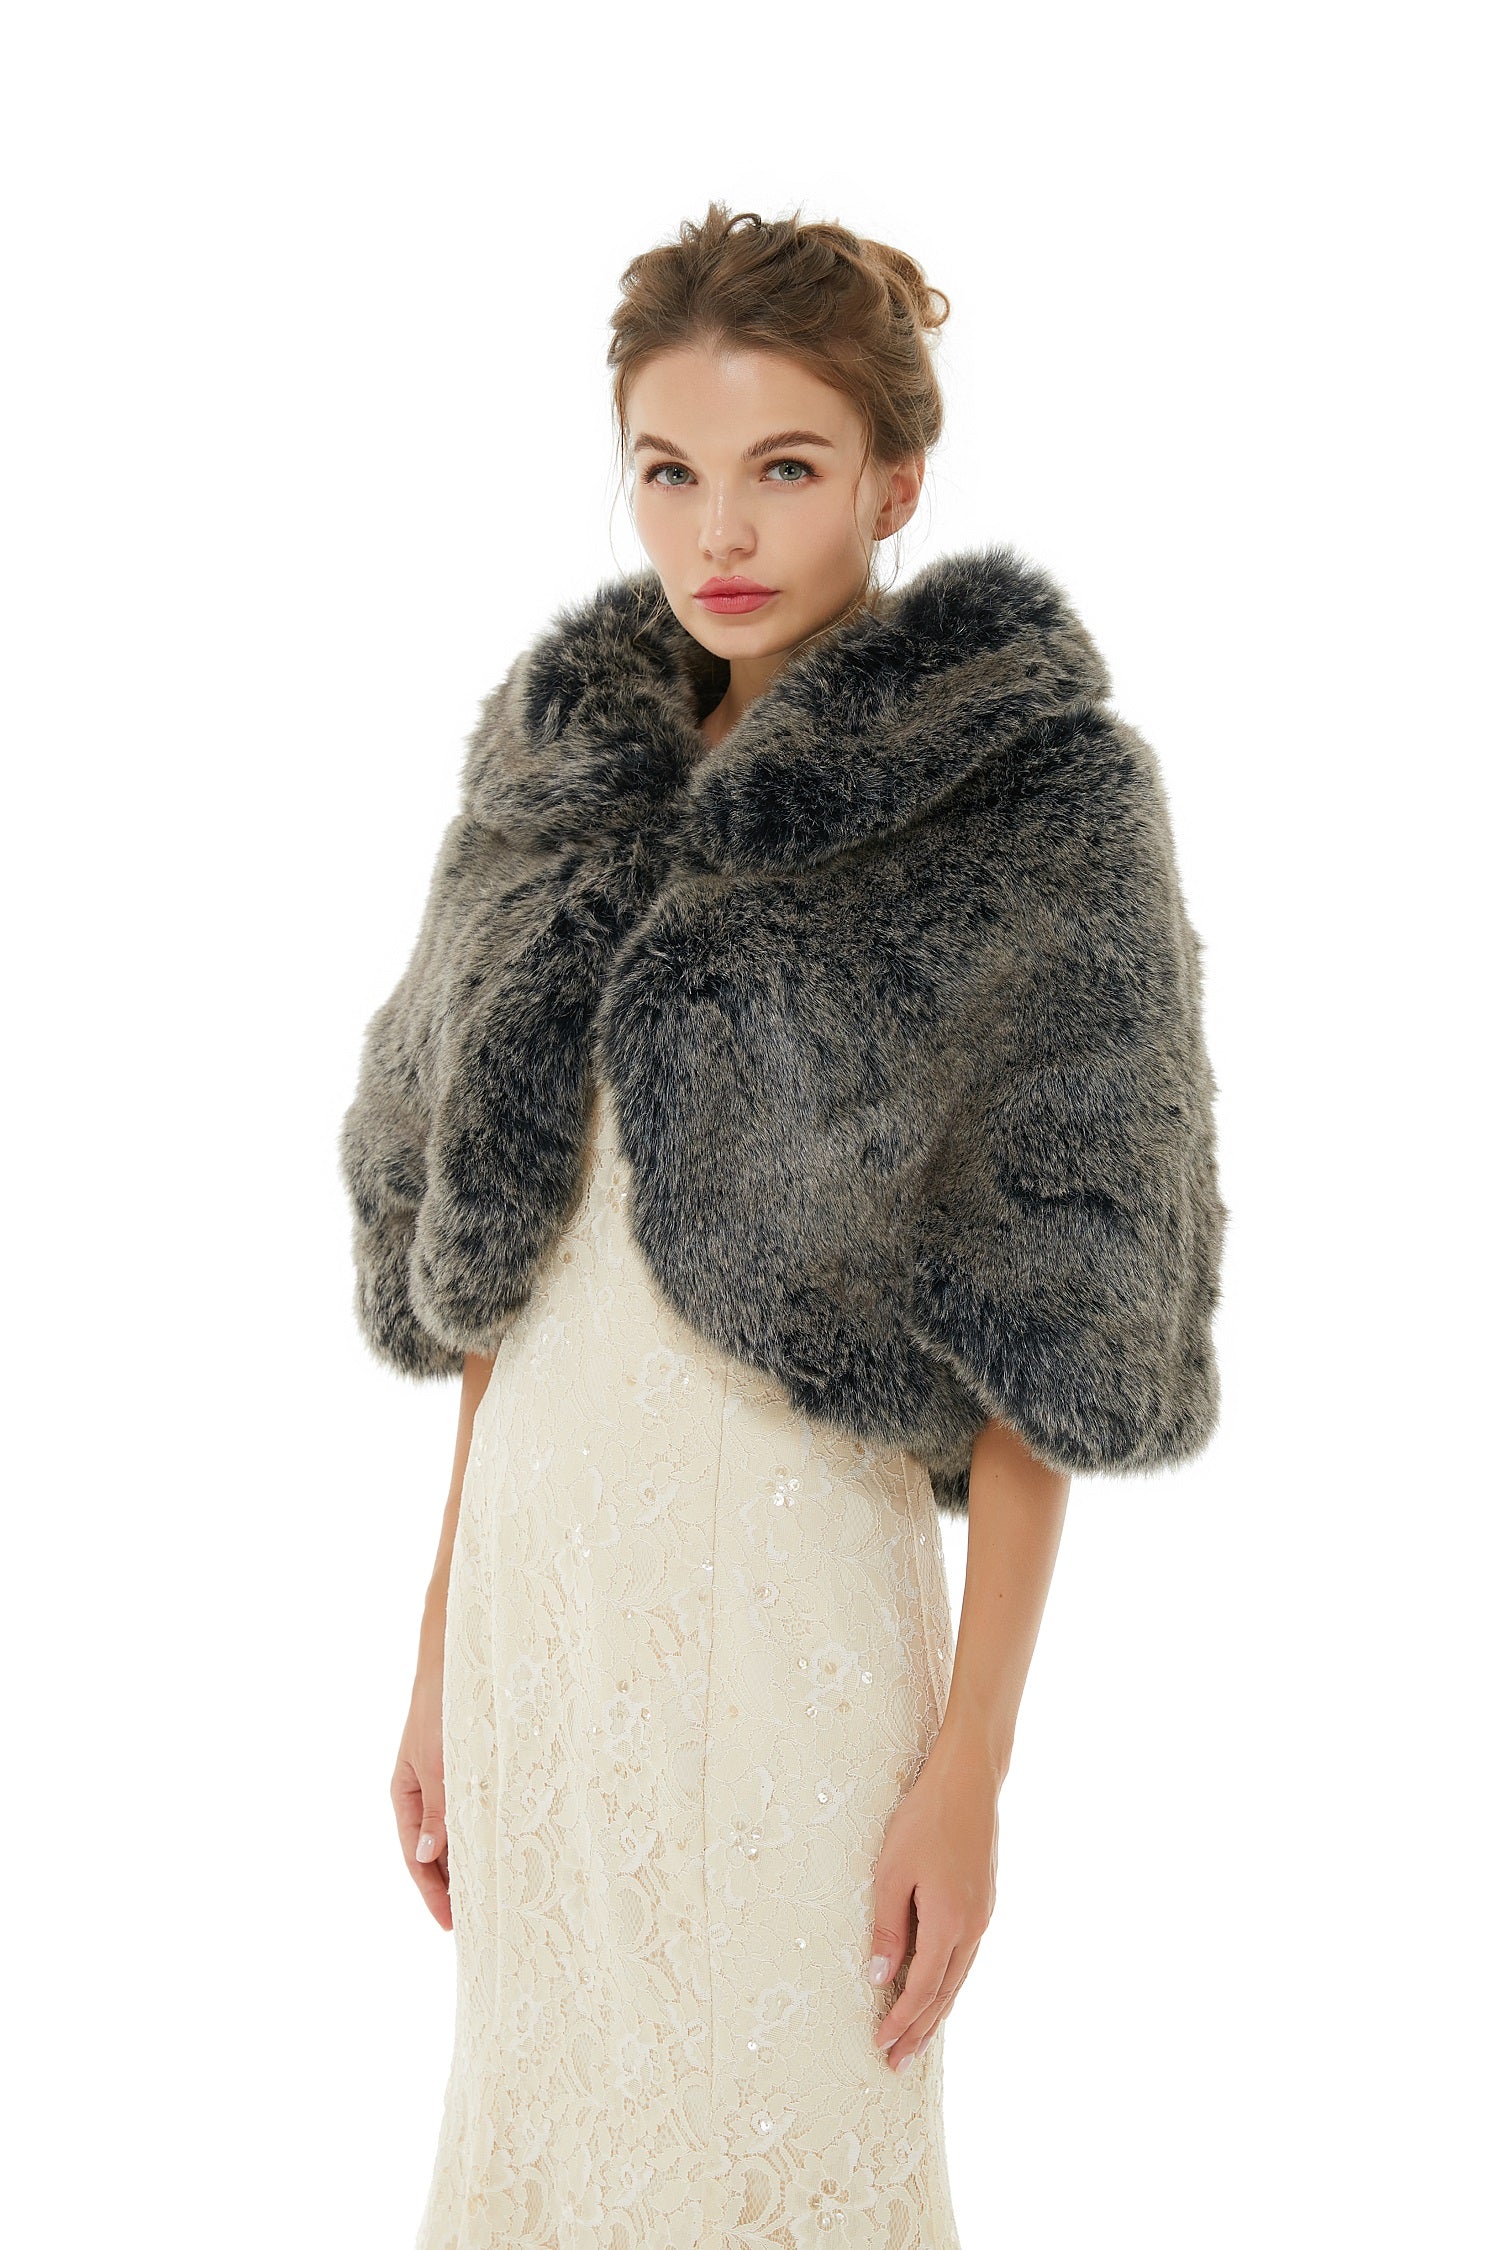 Stunning Dark Grey Faux Fur Wrap for Winter Weddings - lulusllly